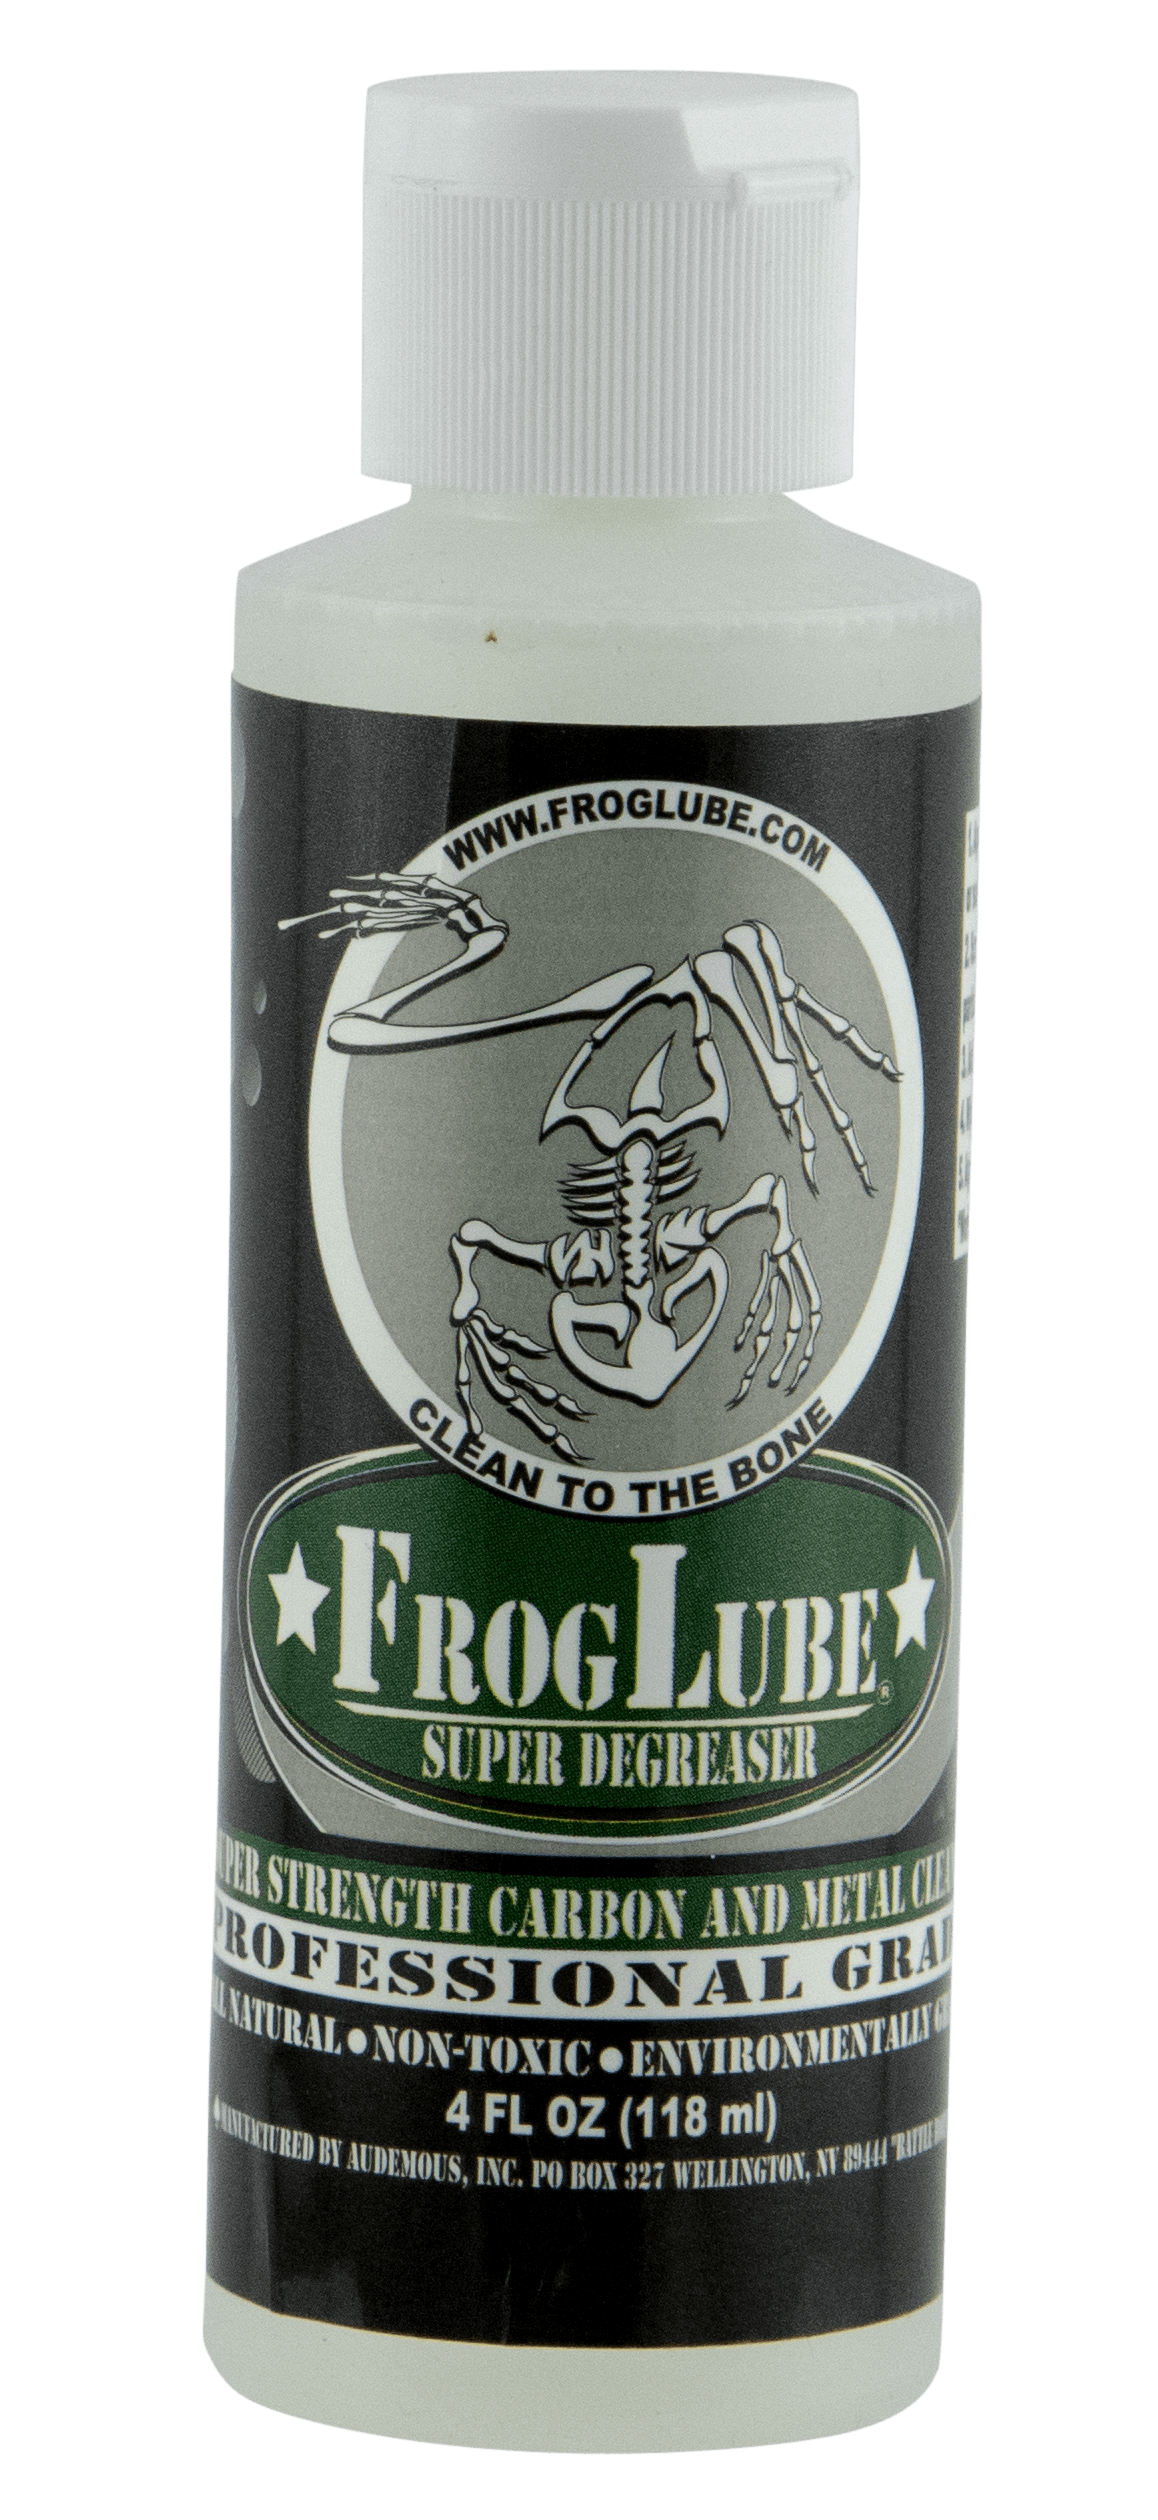 FrogLube Froglube Super Degreaser, Frog 15216 Super Degreaser 4oz Gun Care